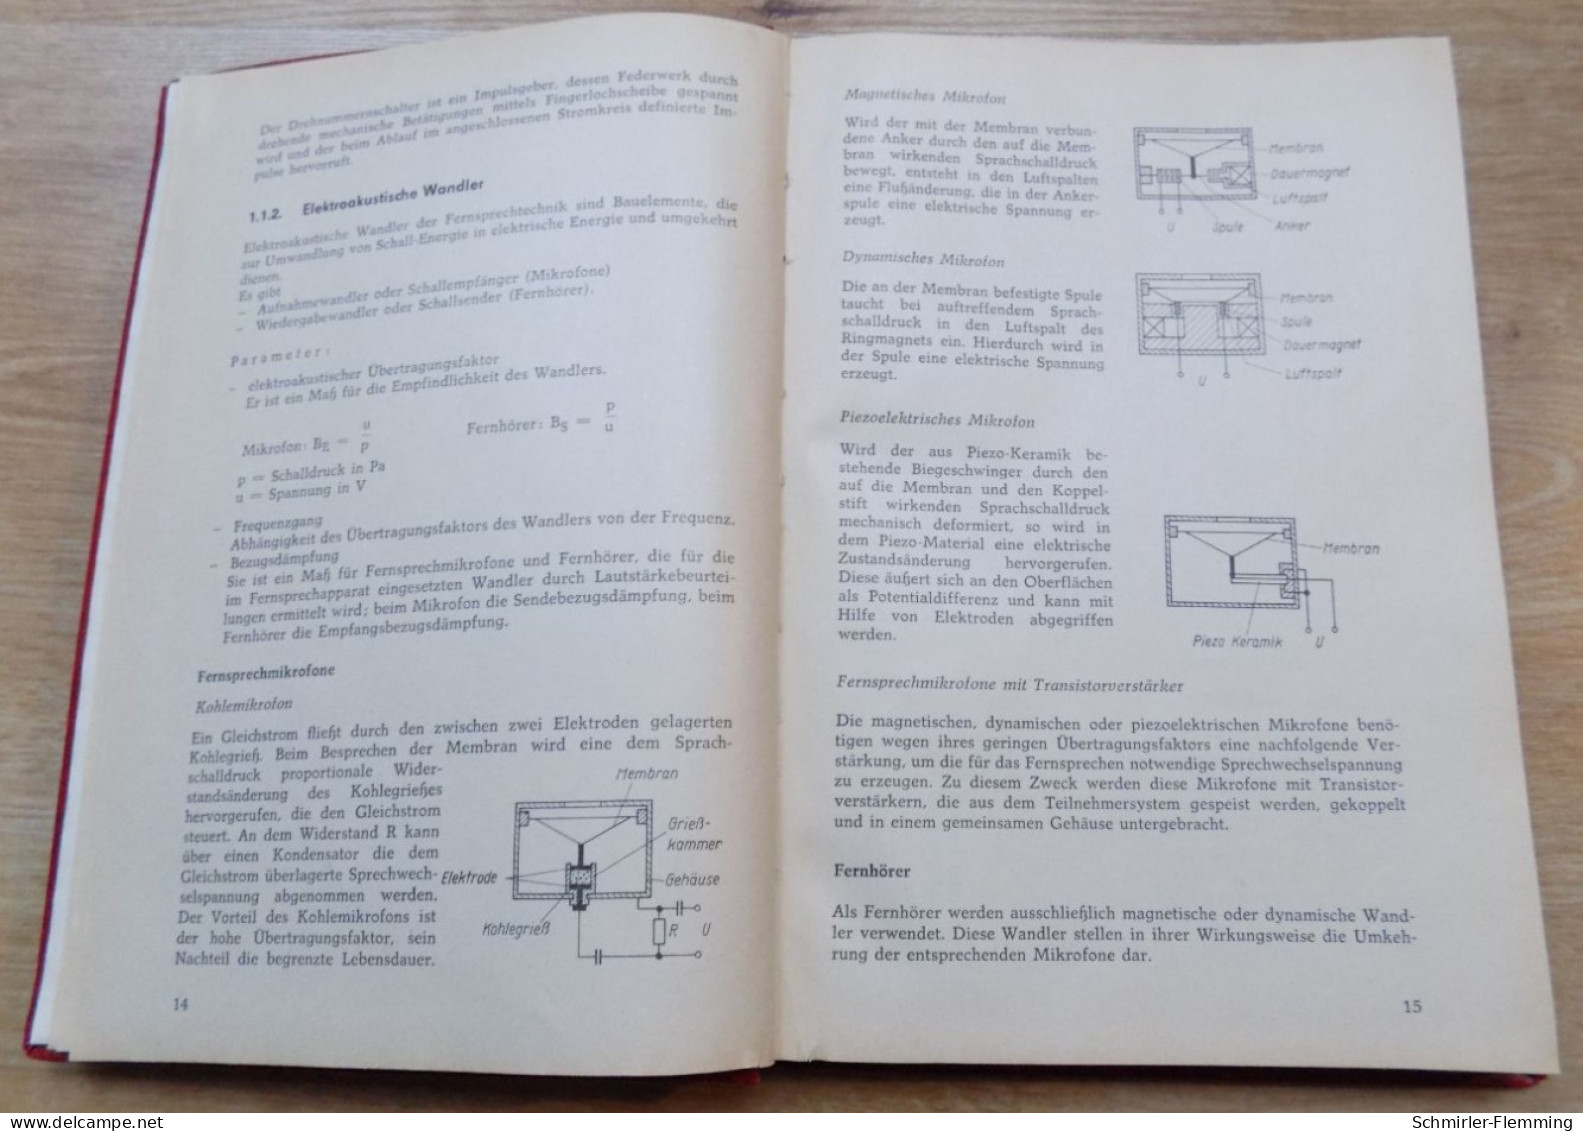 Handbuch Vermittlungs- und Signalanlagen, Dieter Schulz, 2. Auflage 1975, 328 Seiten, aus dem transpress Verlag Berlin